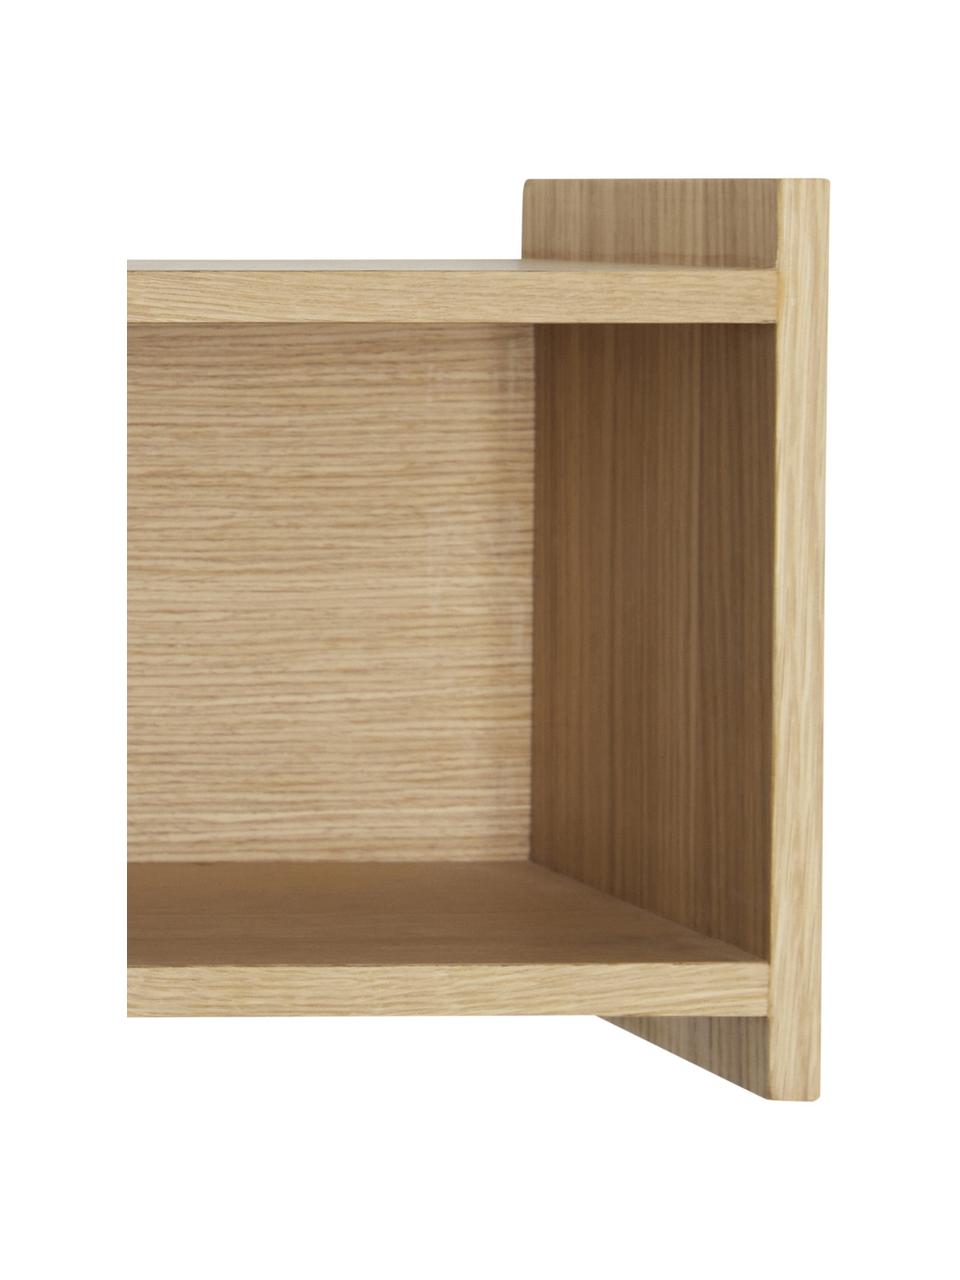 Holz-Wandregal Focal, Eichenholzfurnier, FSC-zertifiziert, Holz, B 80 x H 23 cm